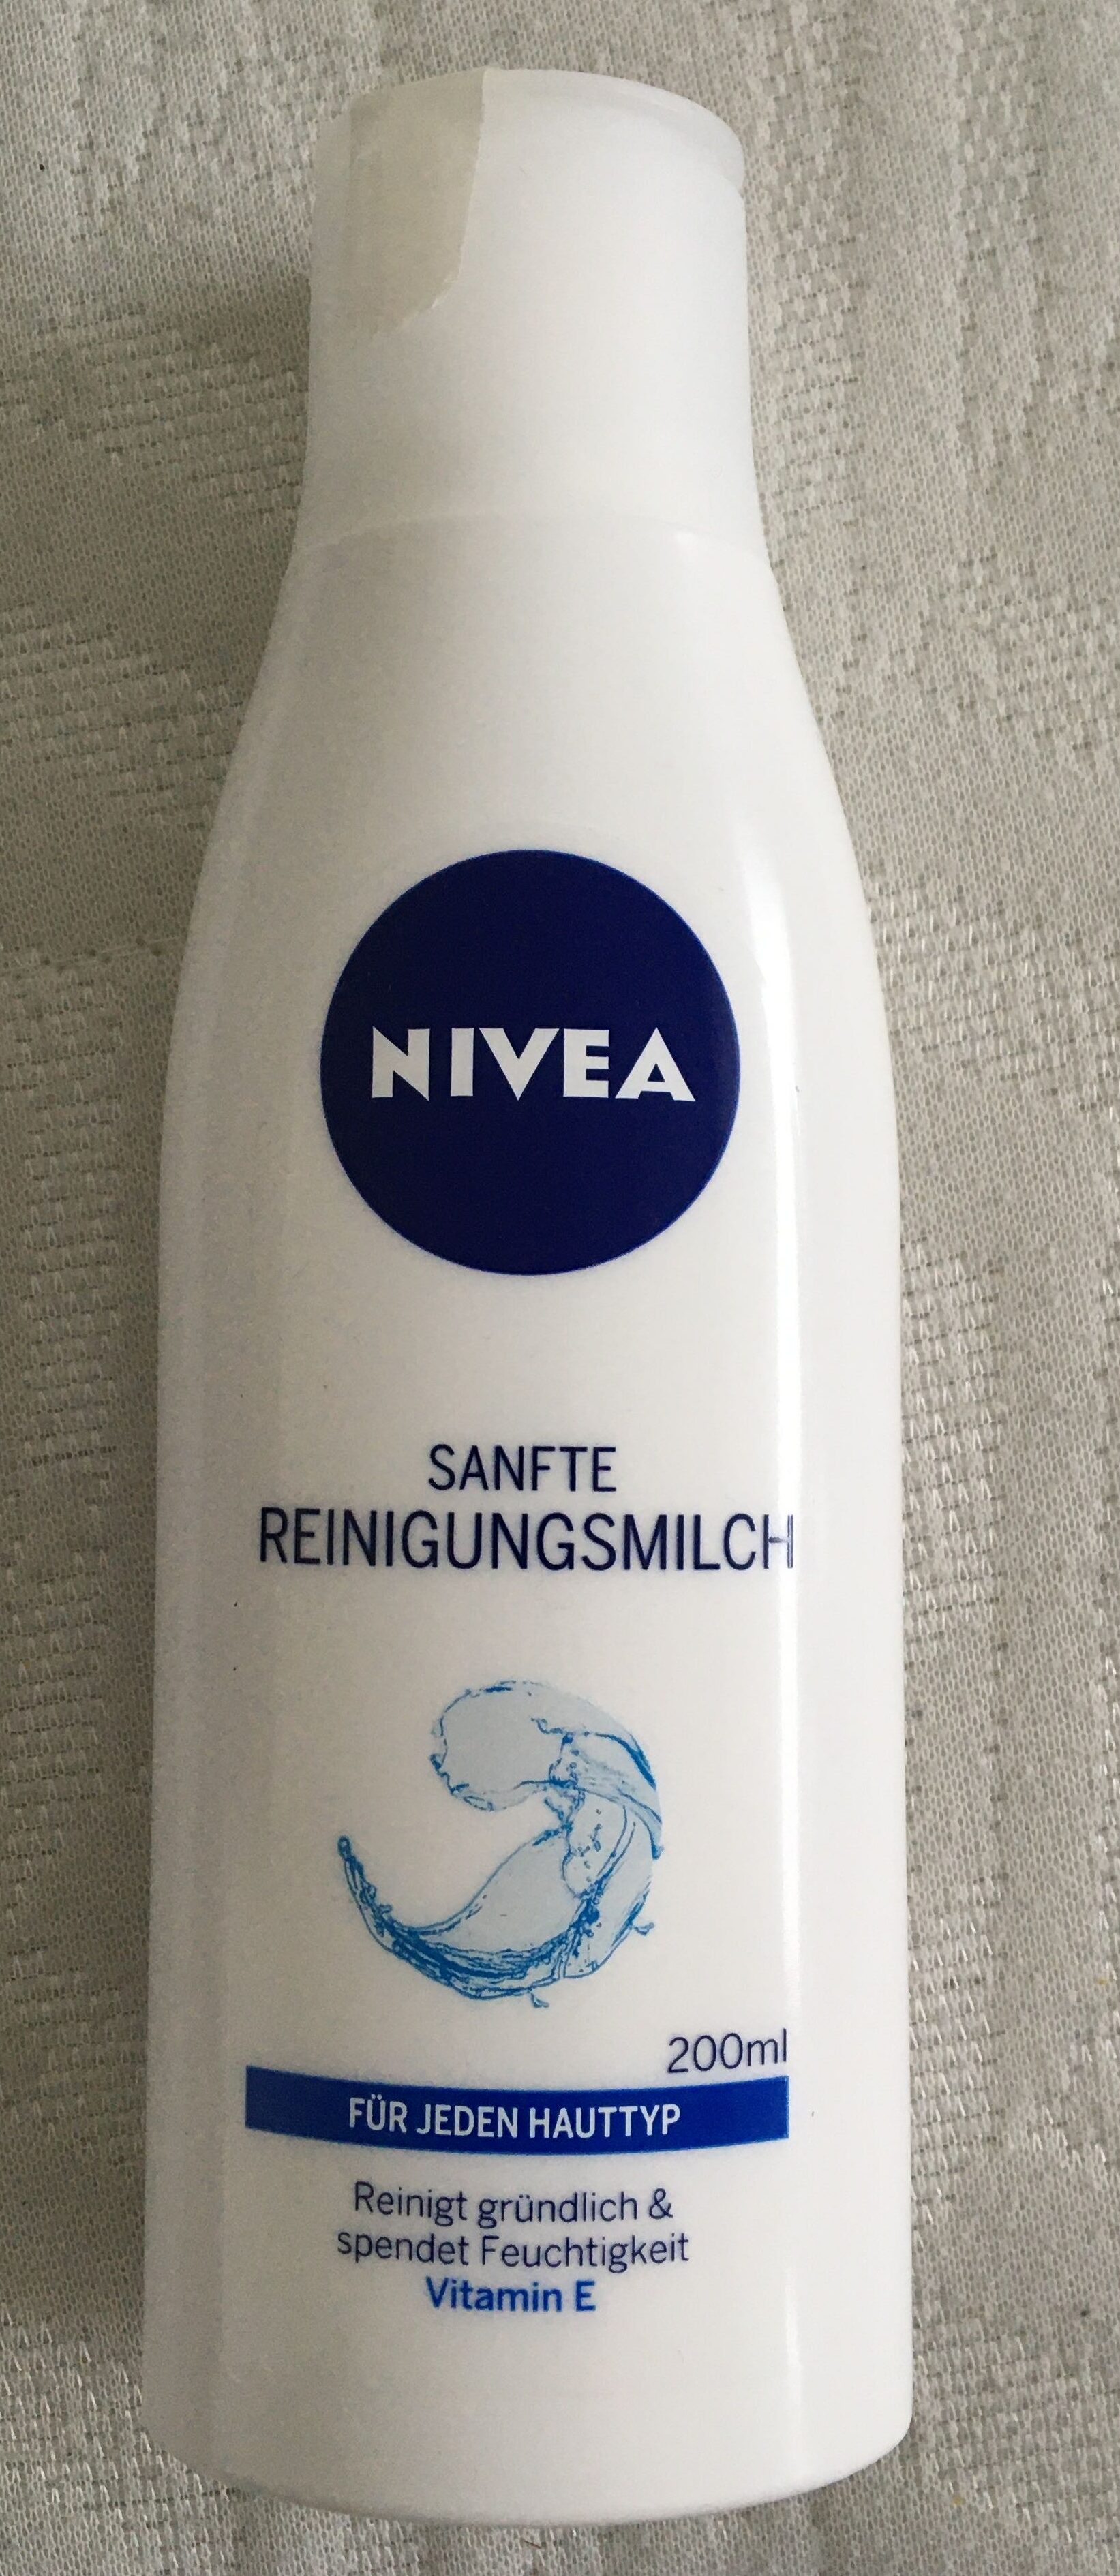 Sanfte Reinigungsmilch - Produkt - de